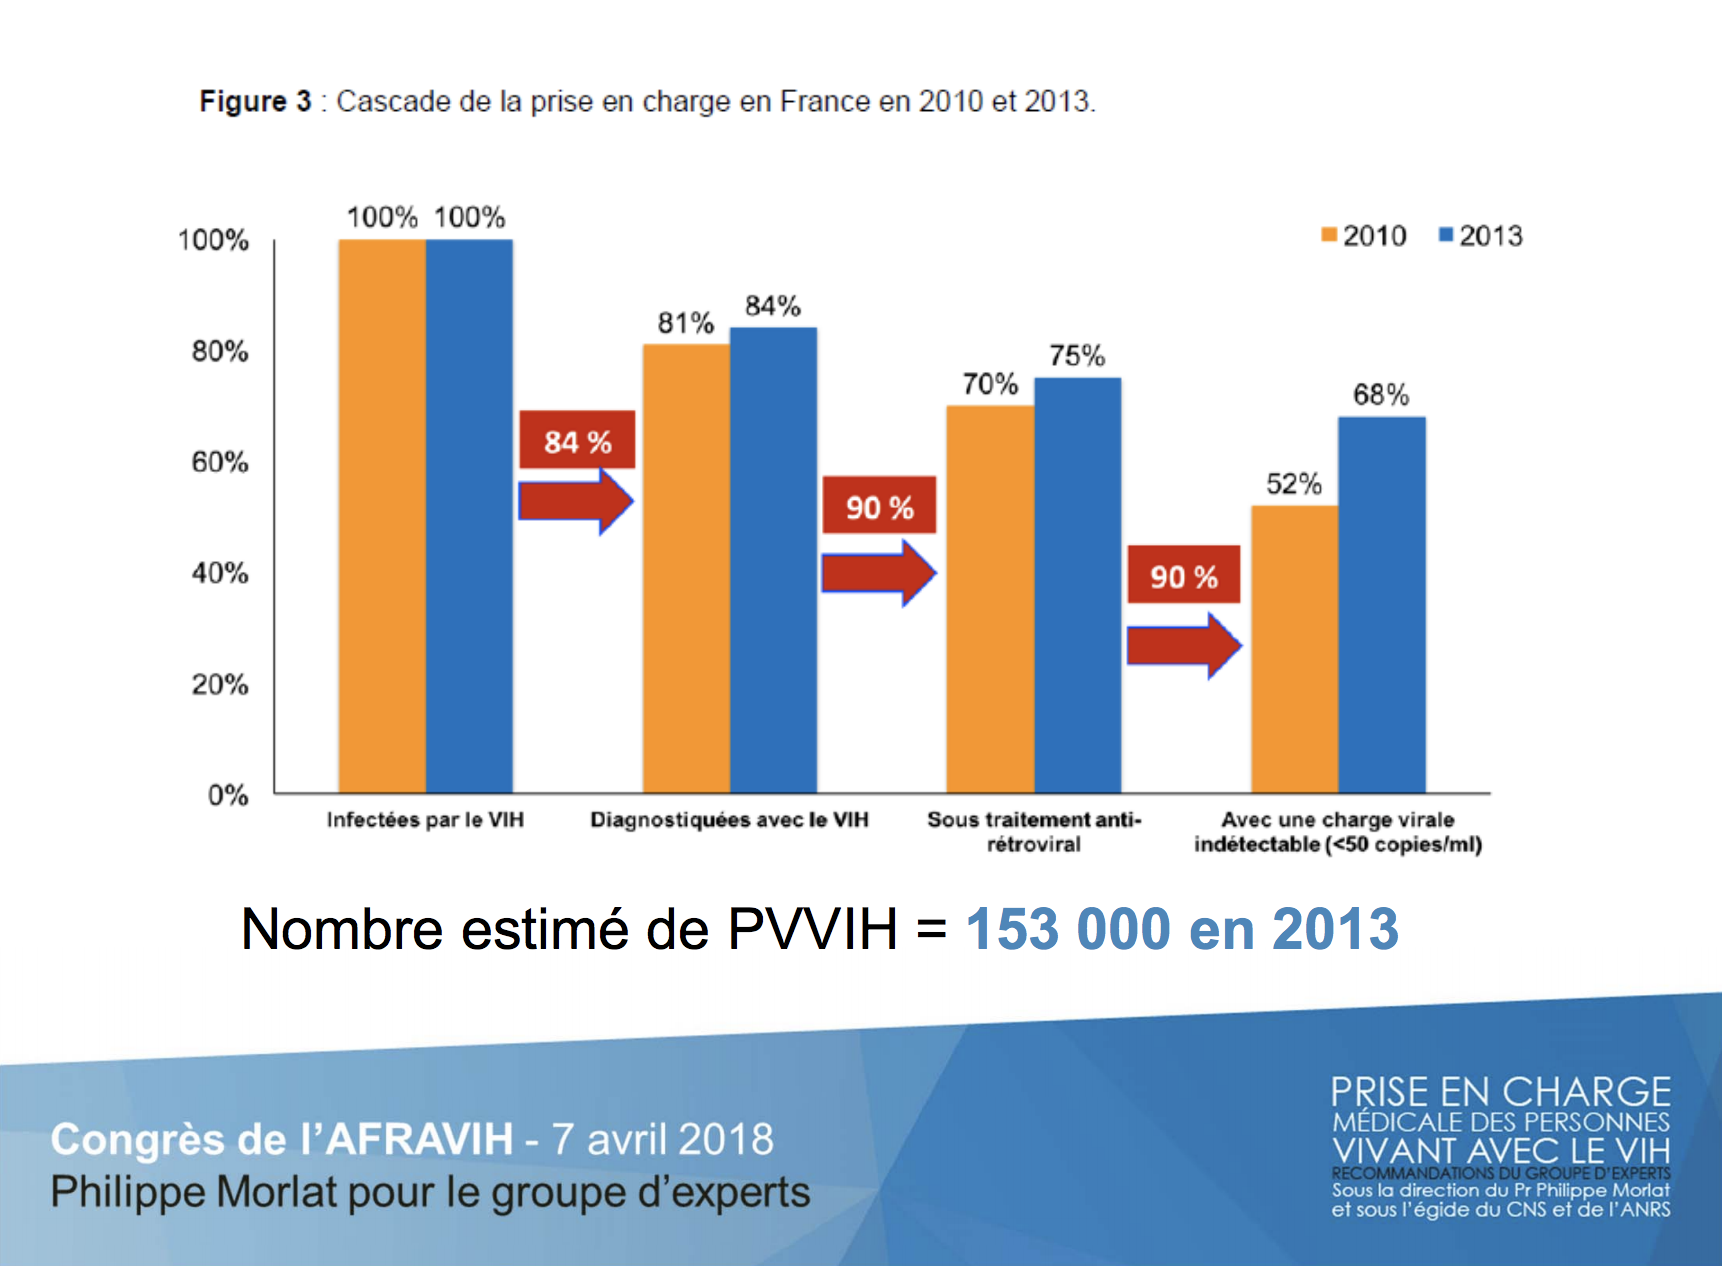 Cascade de la prise de l'infection VIH en charge en France